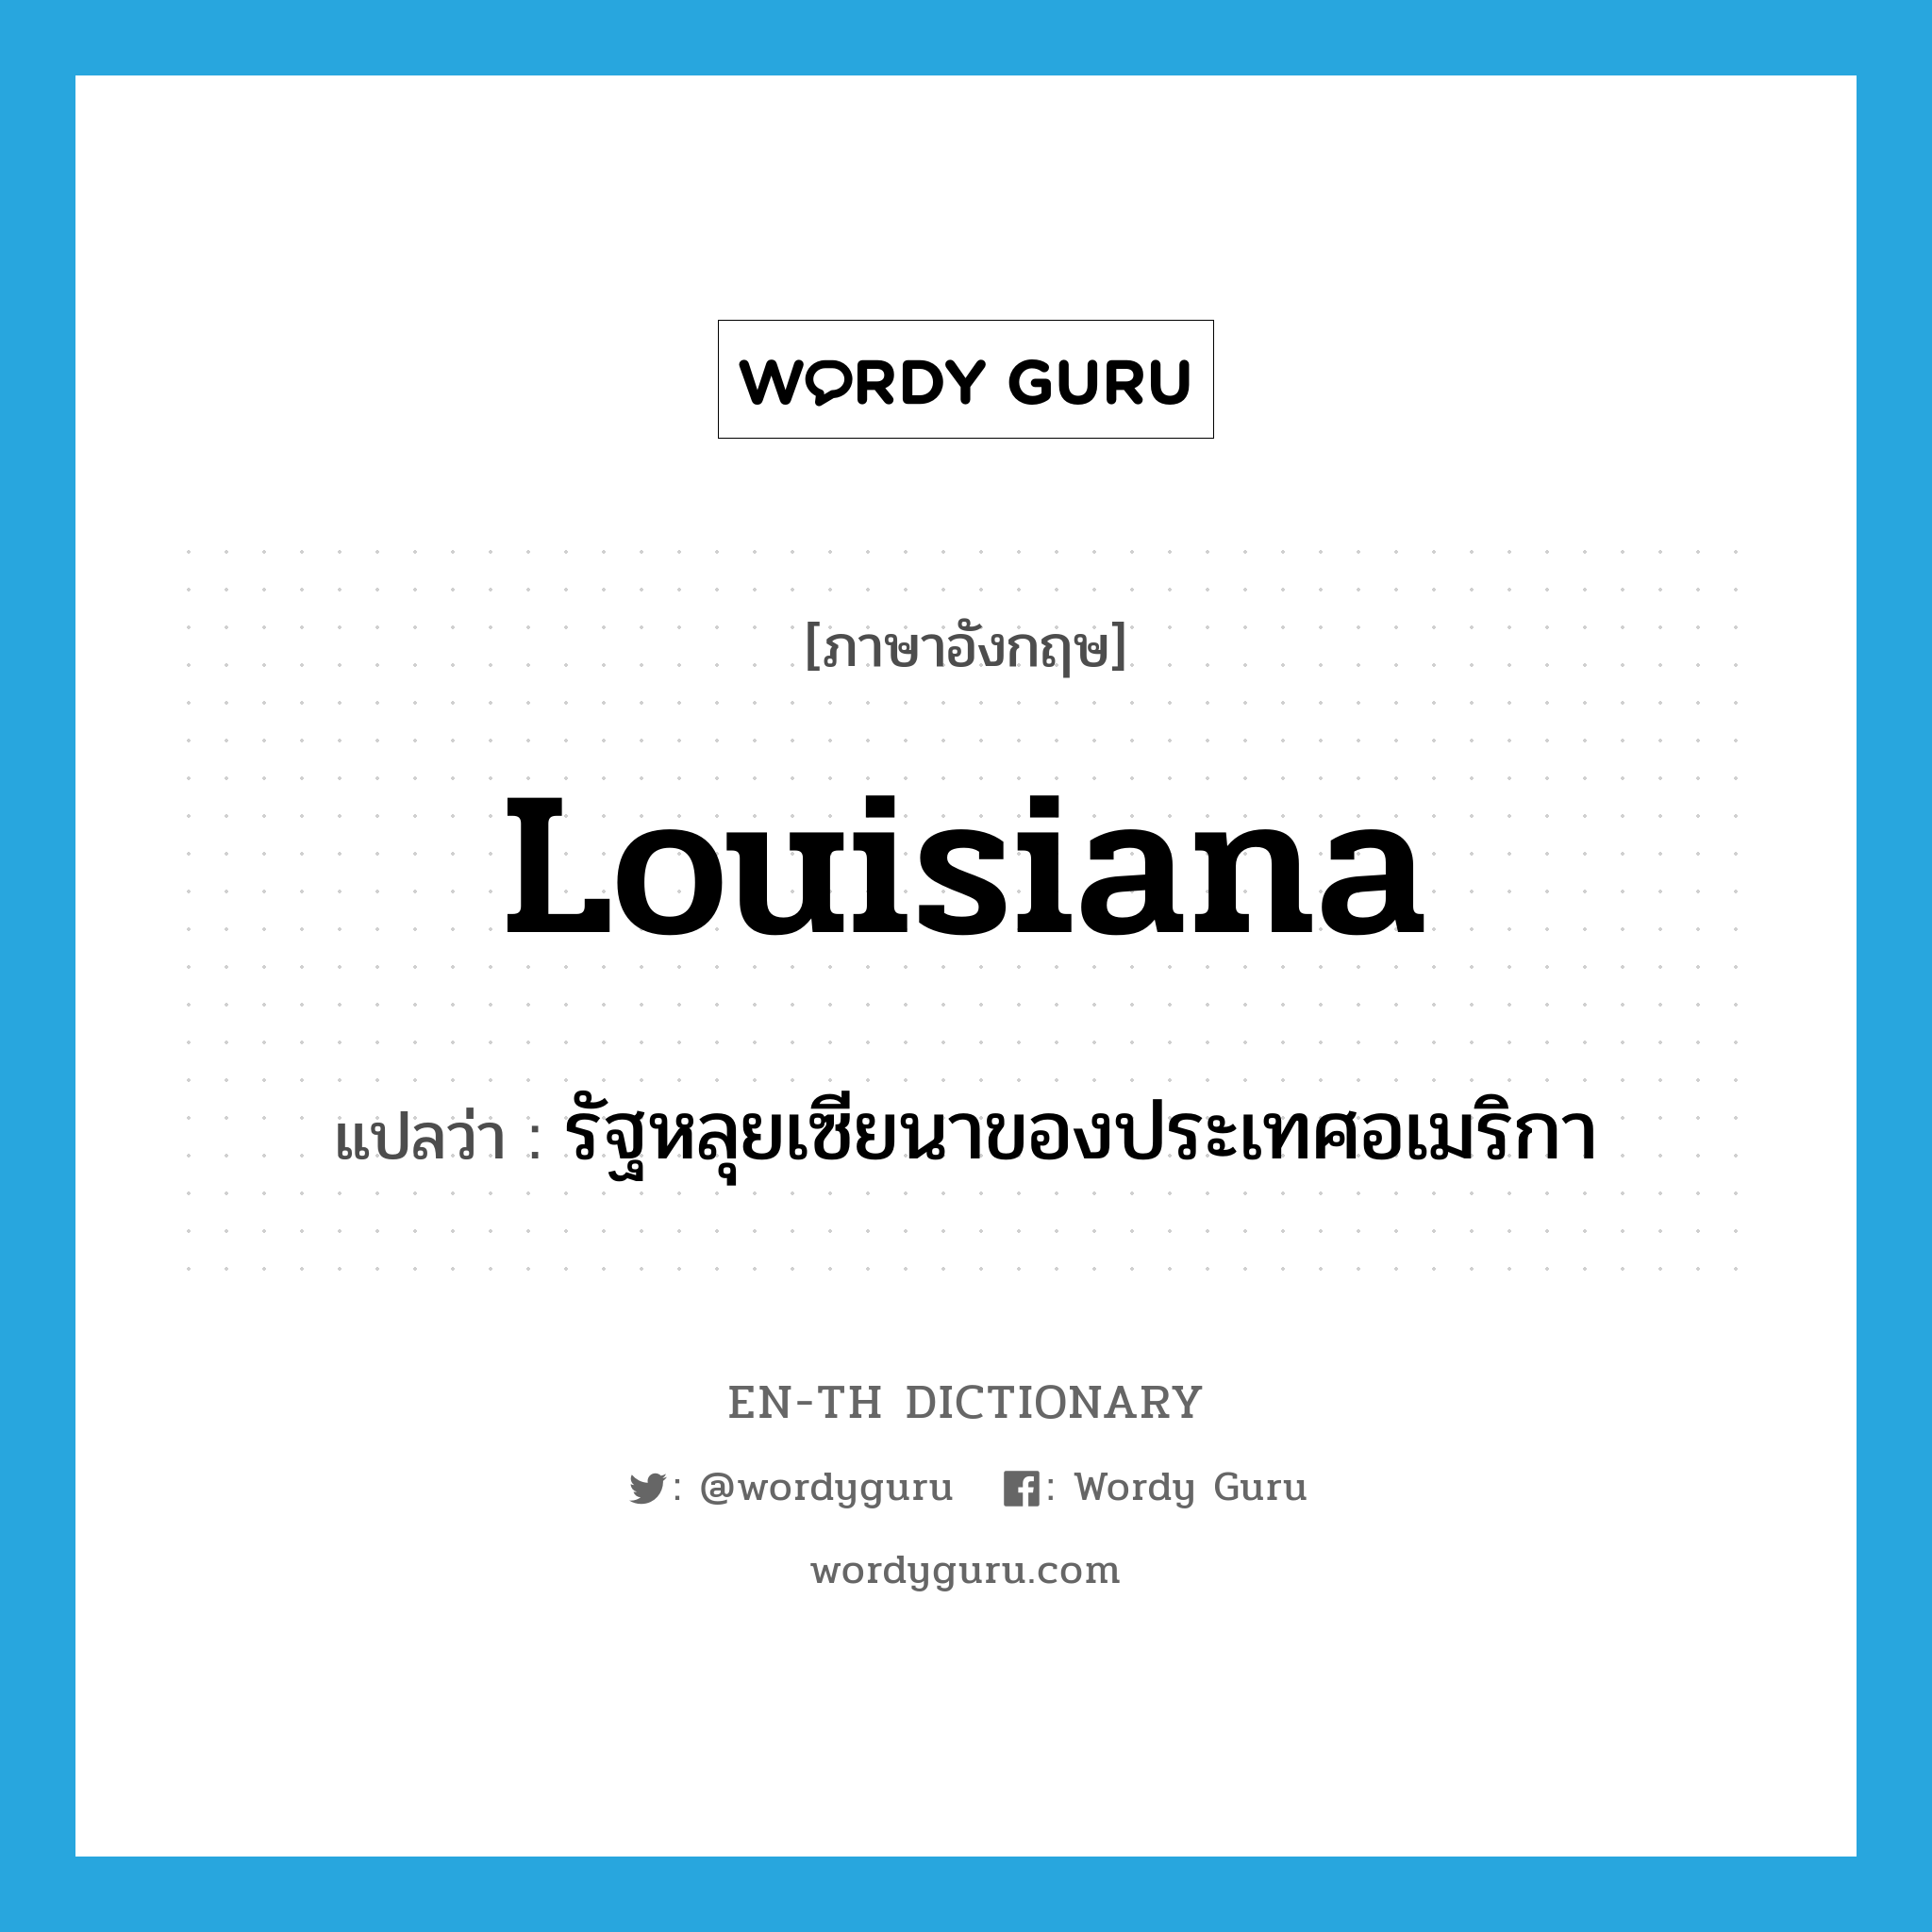 Louisiana แปลว่า?, คำศัพท์ภาษาอังกฤษ Louisiana แปลว่า รัฐหลุยเซียนาของประเทศอเมริกา ประเภท N หมวด N